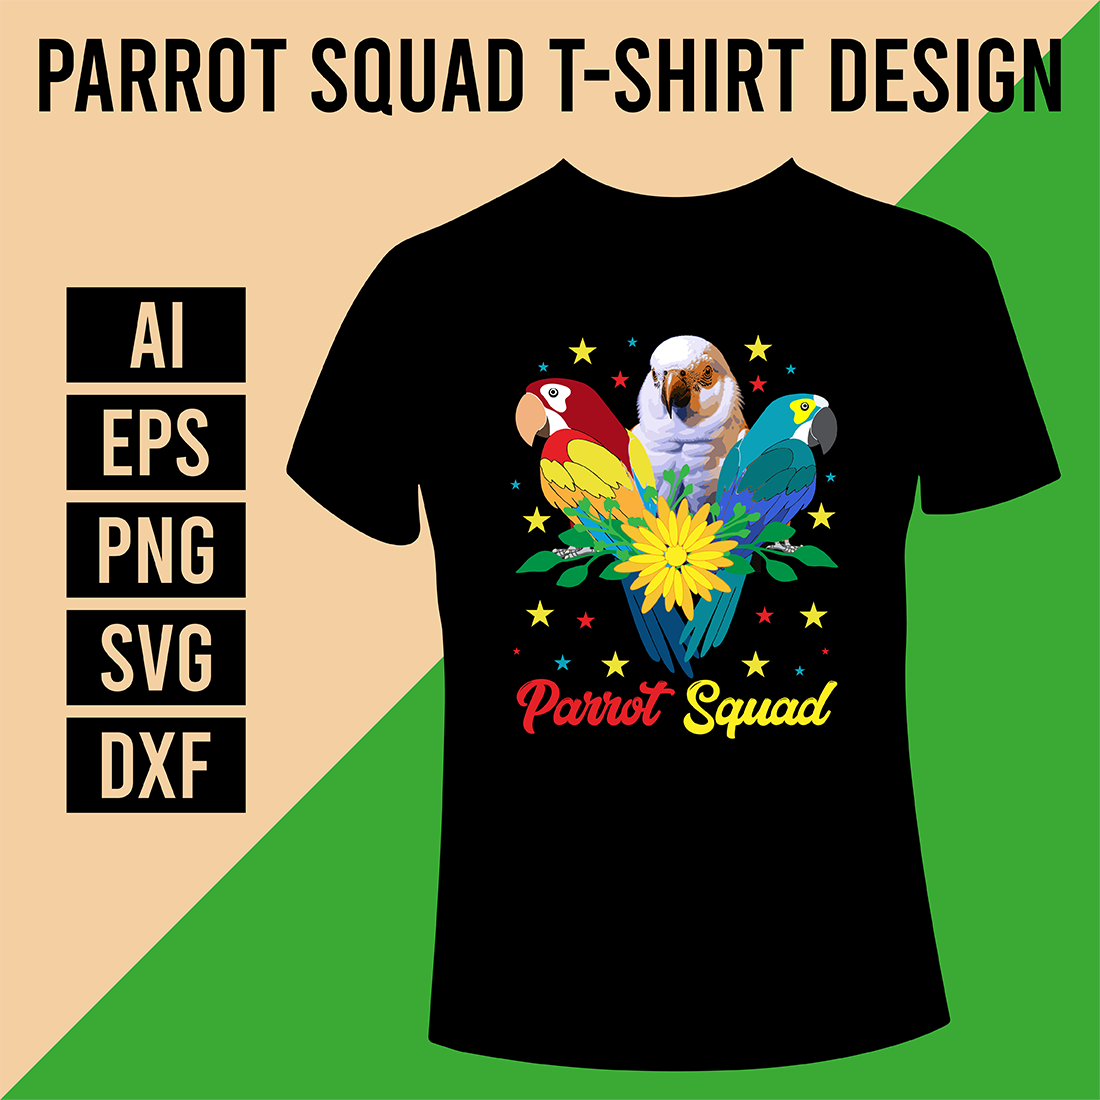 Parrot Squad T-Shirt Design cover image.